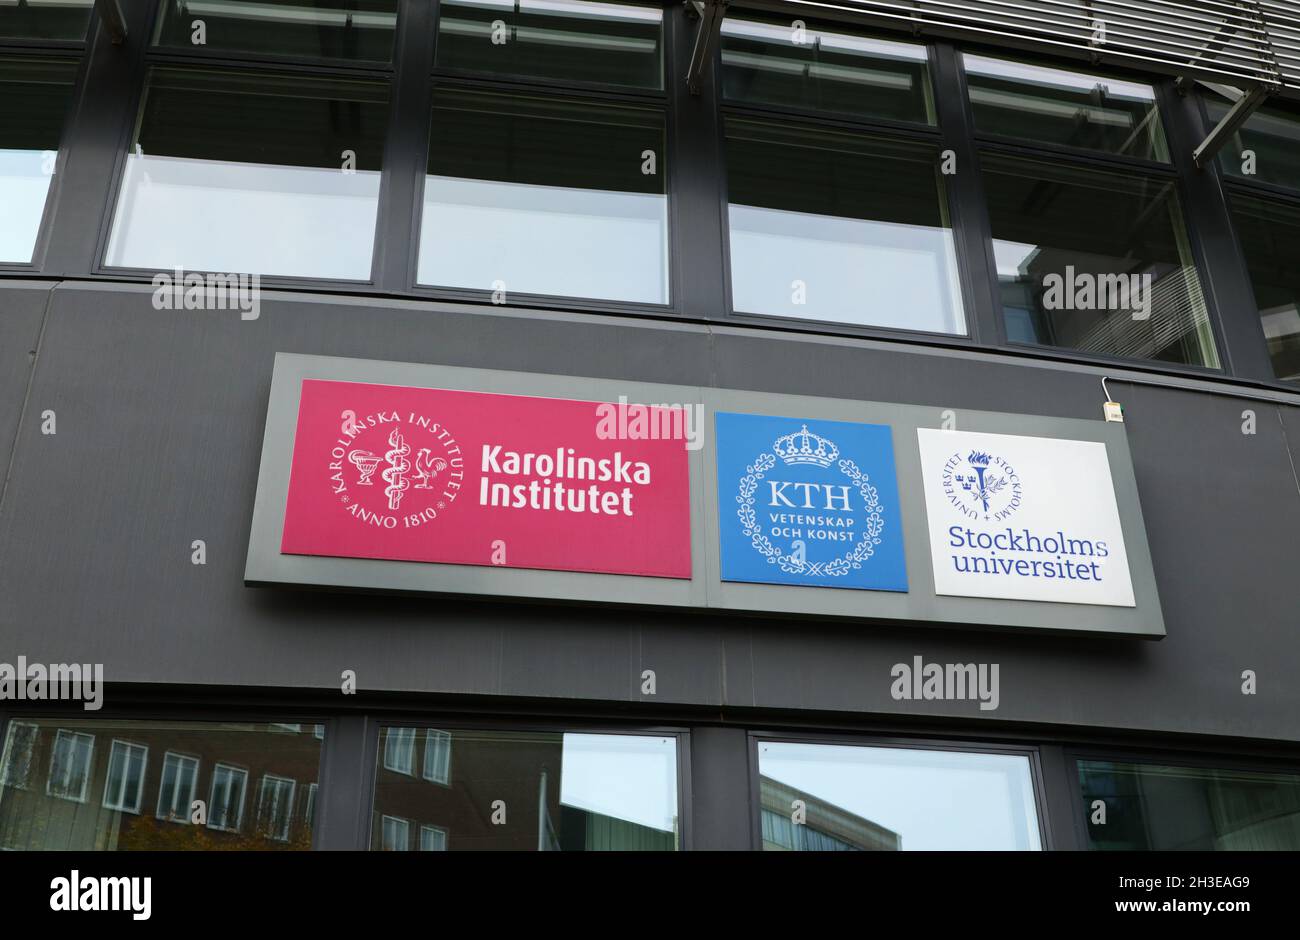 Signs at Campus Solna in Solna, Stockholm, Sweden. From left: The Karolinska Institute (karolinska Institutet), KTH Vetenskap och konst and Stockholm University (Stockholms universitet). Stock Photo